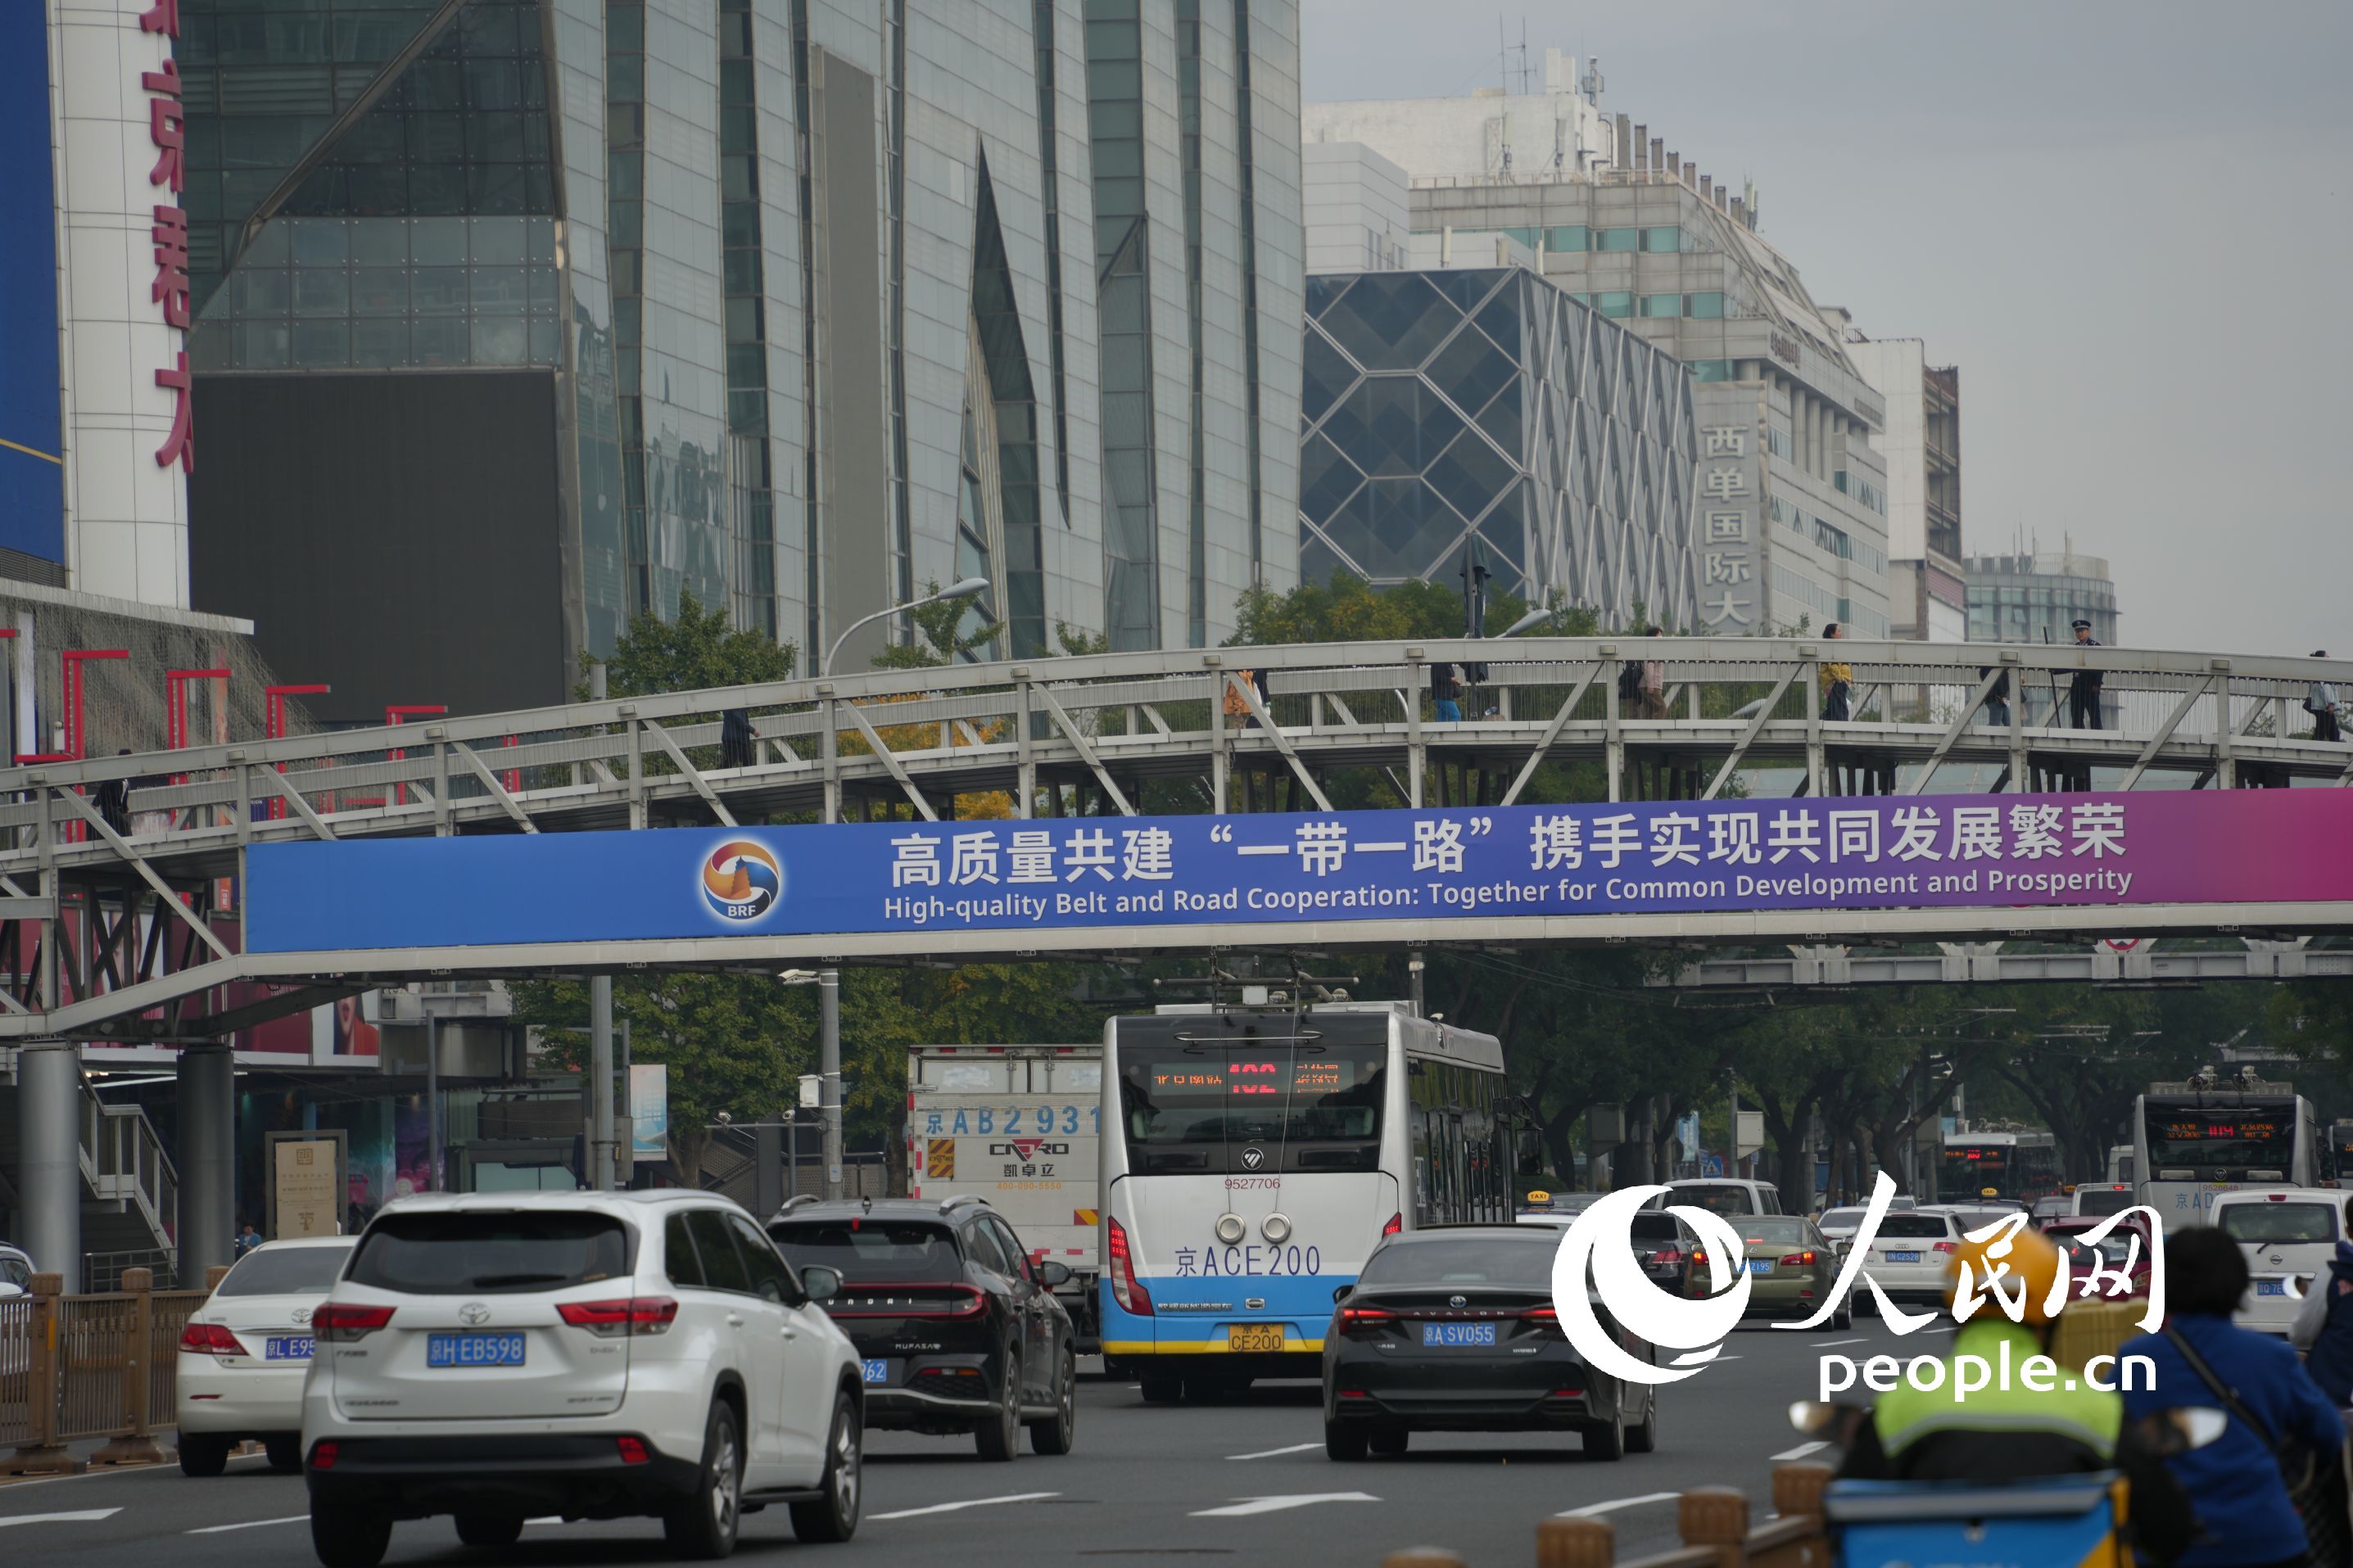 北京西單路口的一處人行天橋上挂起“一帶一路”國際合作高峰論壇主題橫幅。（人民網記者 王天樂攝）